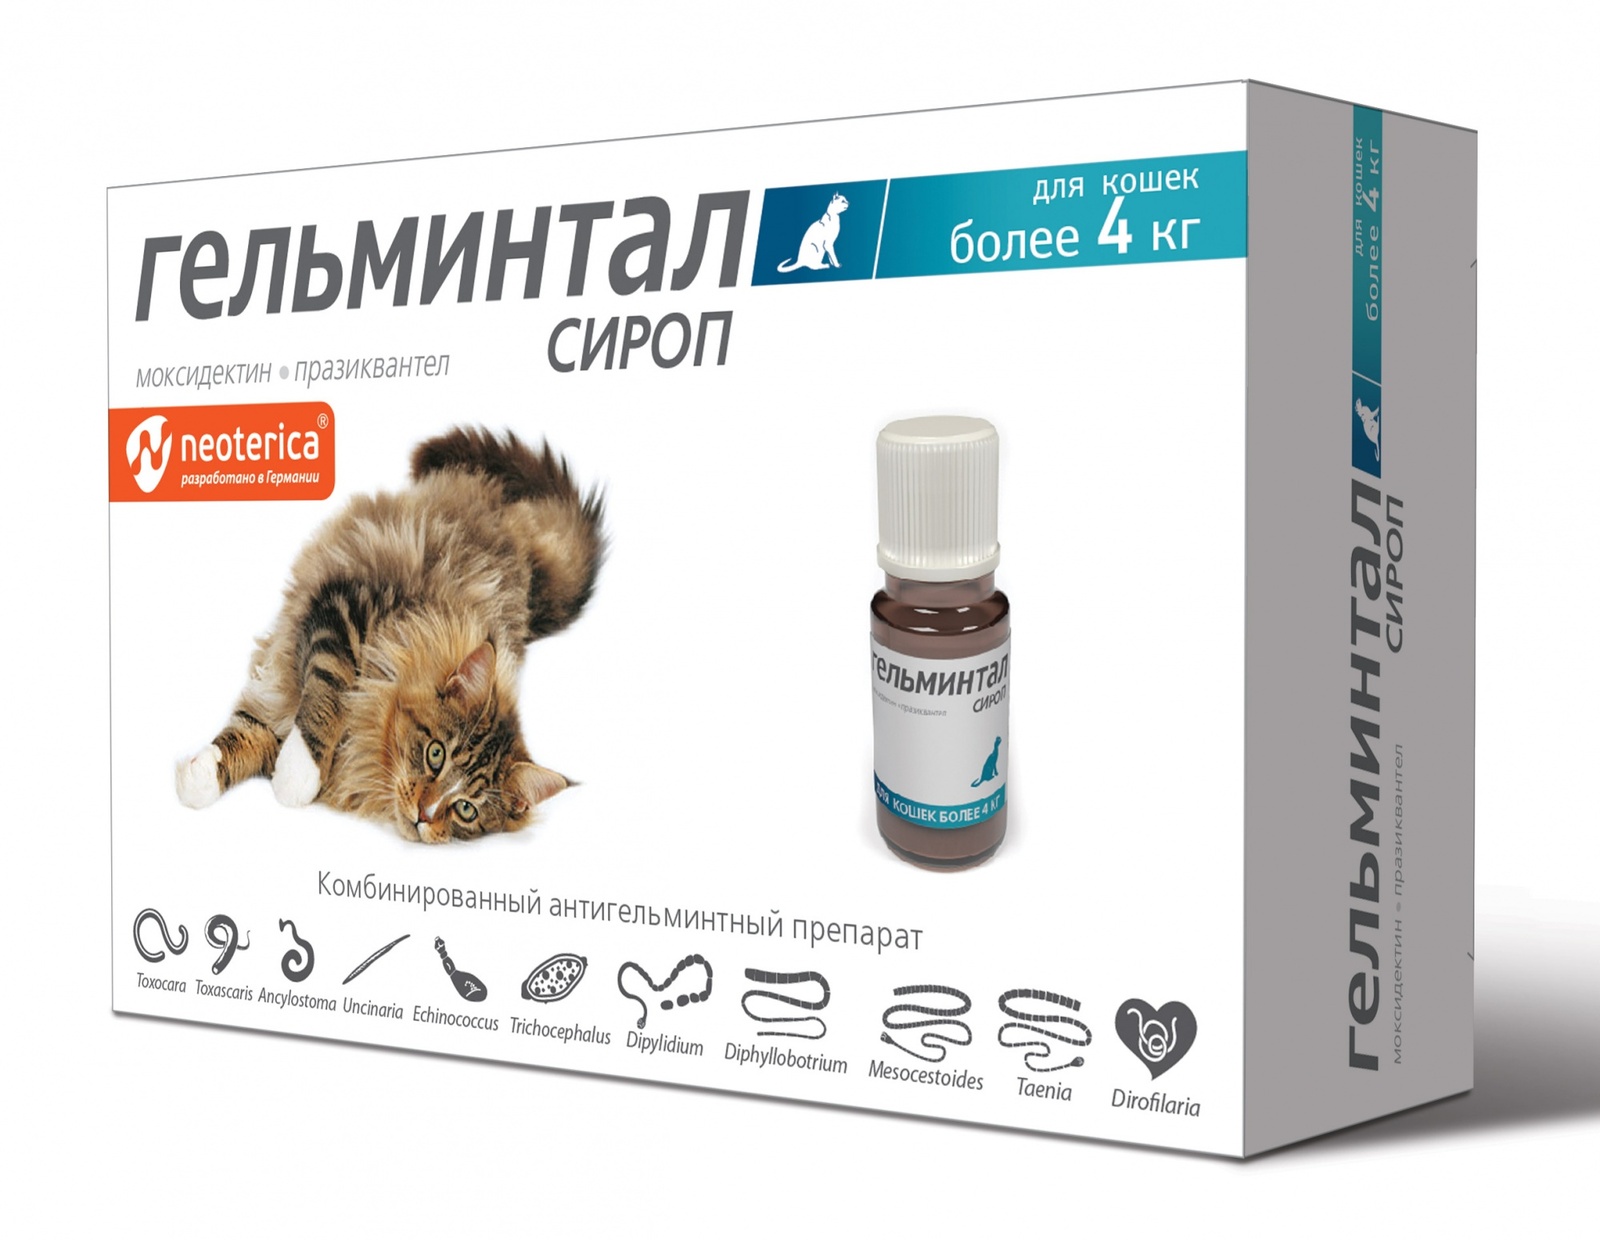 Гельминтал Гельминтал сироп от глистов, для кошек более 4 кг, 5 мл (60 г) гельминтал таблетки для кошек более 4 кг от гельминтов